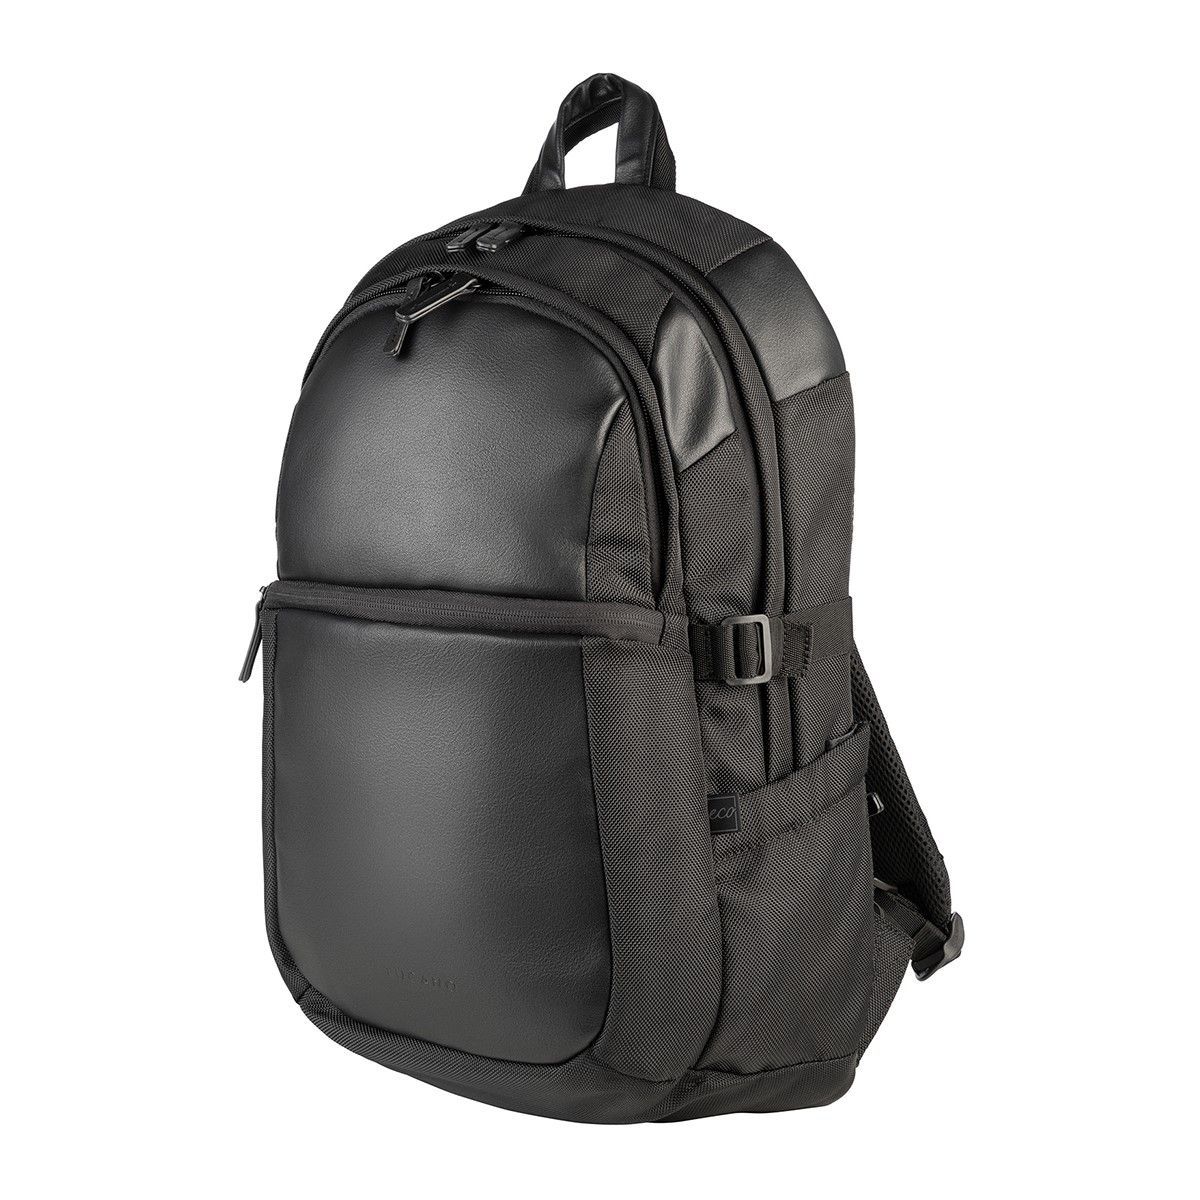 Tucano Backpack Bravo-Antigravity Black